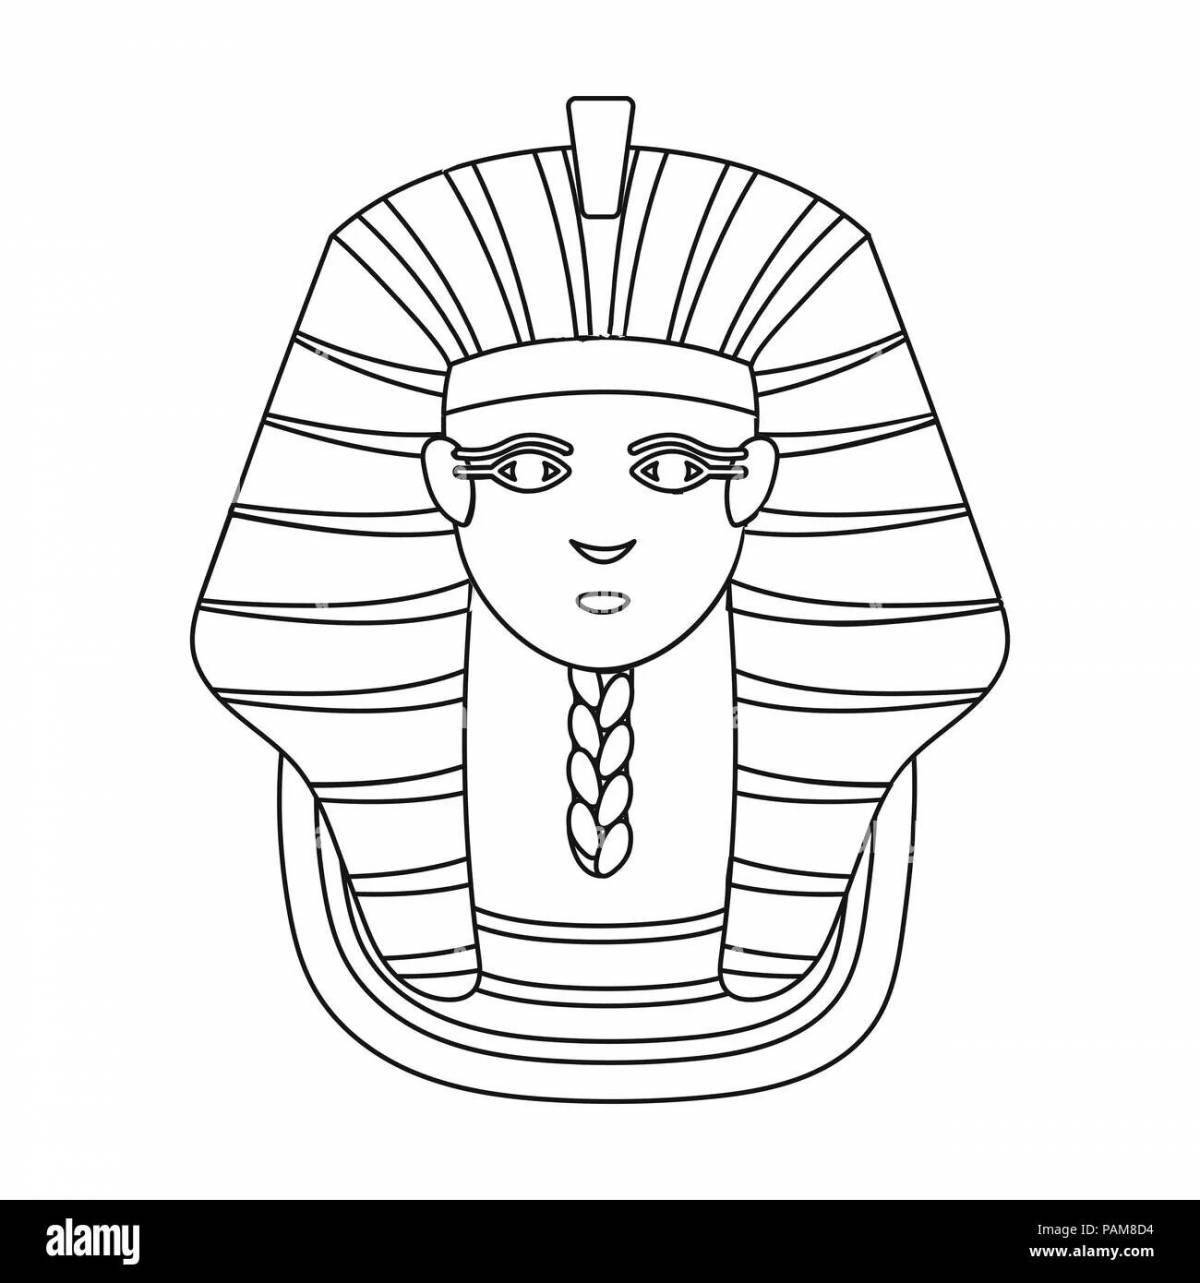 Royal pharaoh mask coloring page